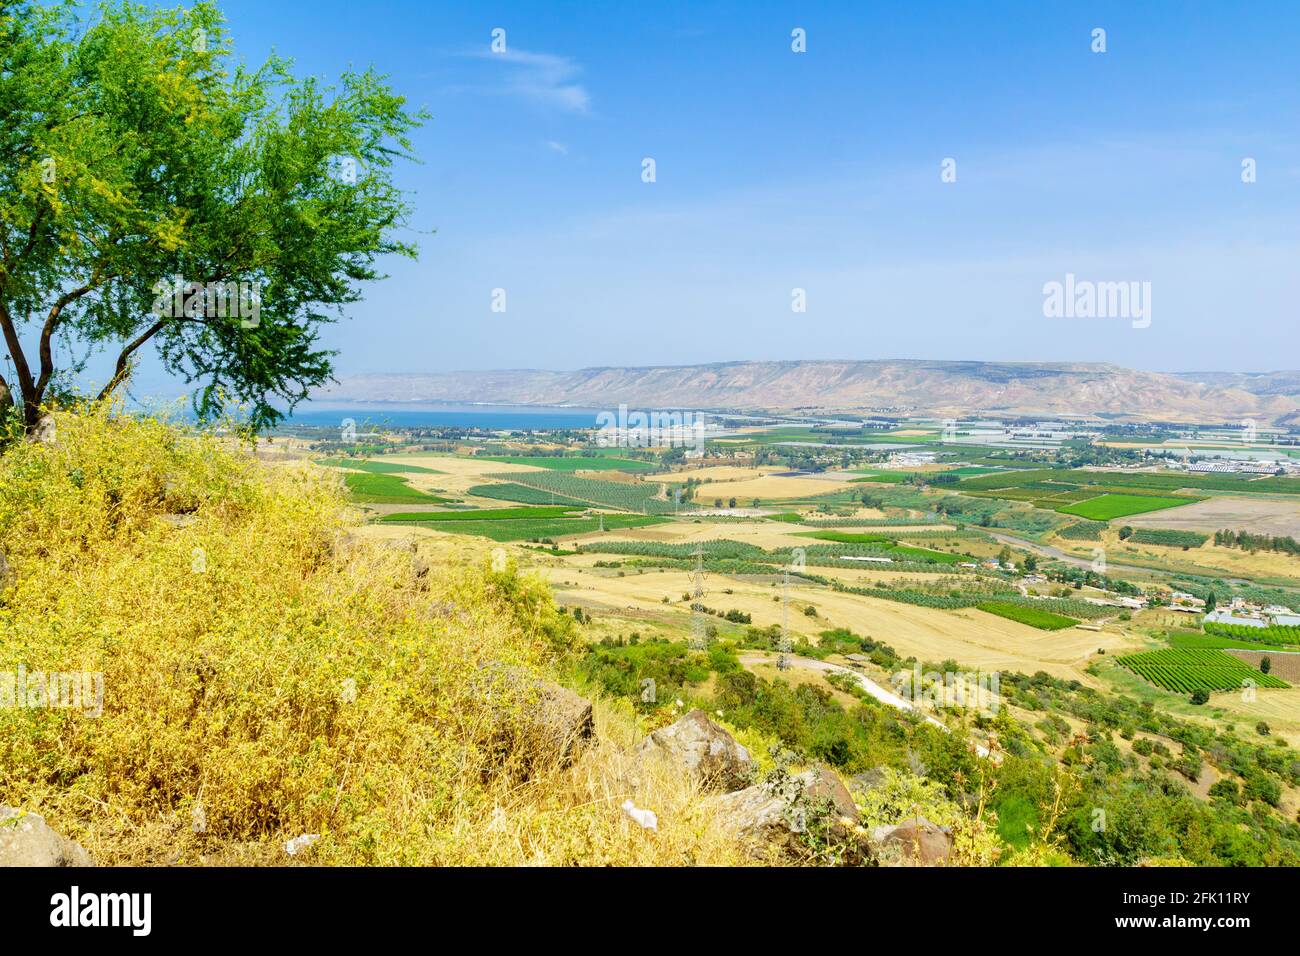 Vista sul mare di Galilea e sulla valle del fiume Giordano inferiore. Israele settentrionale Foto Stock